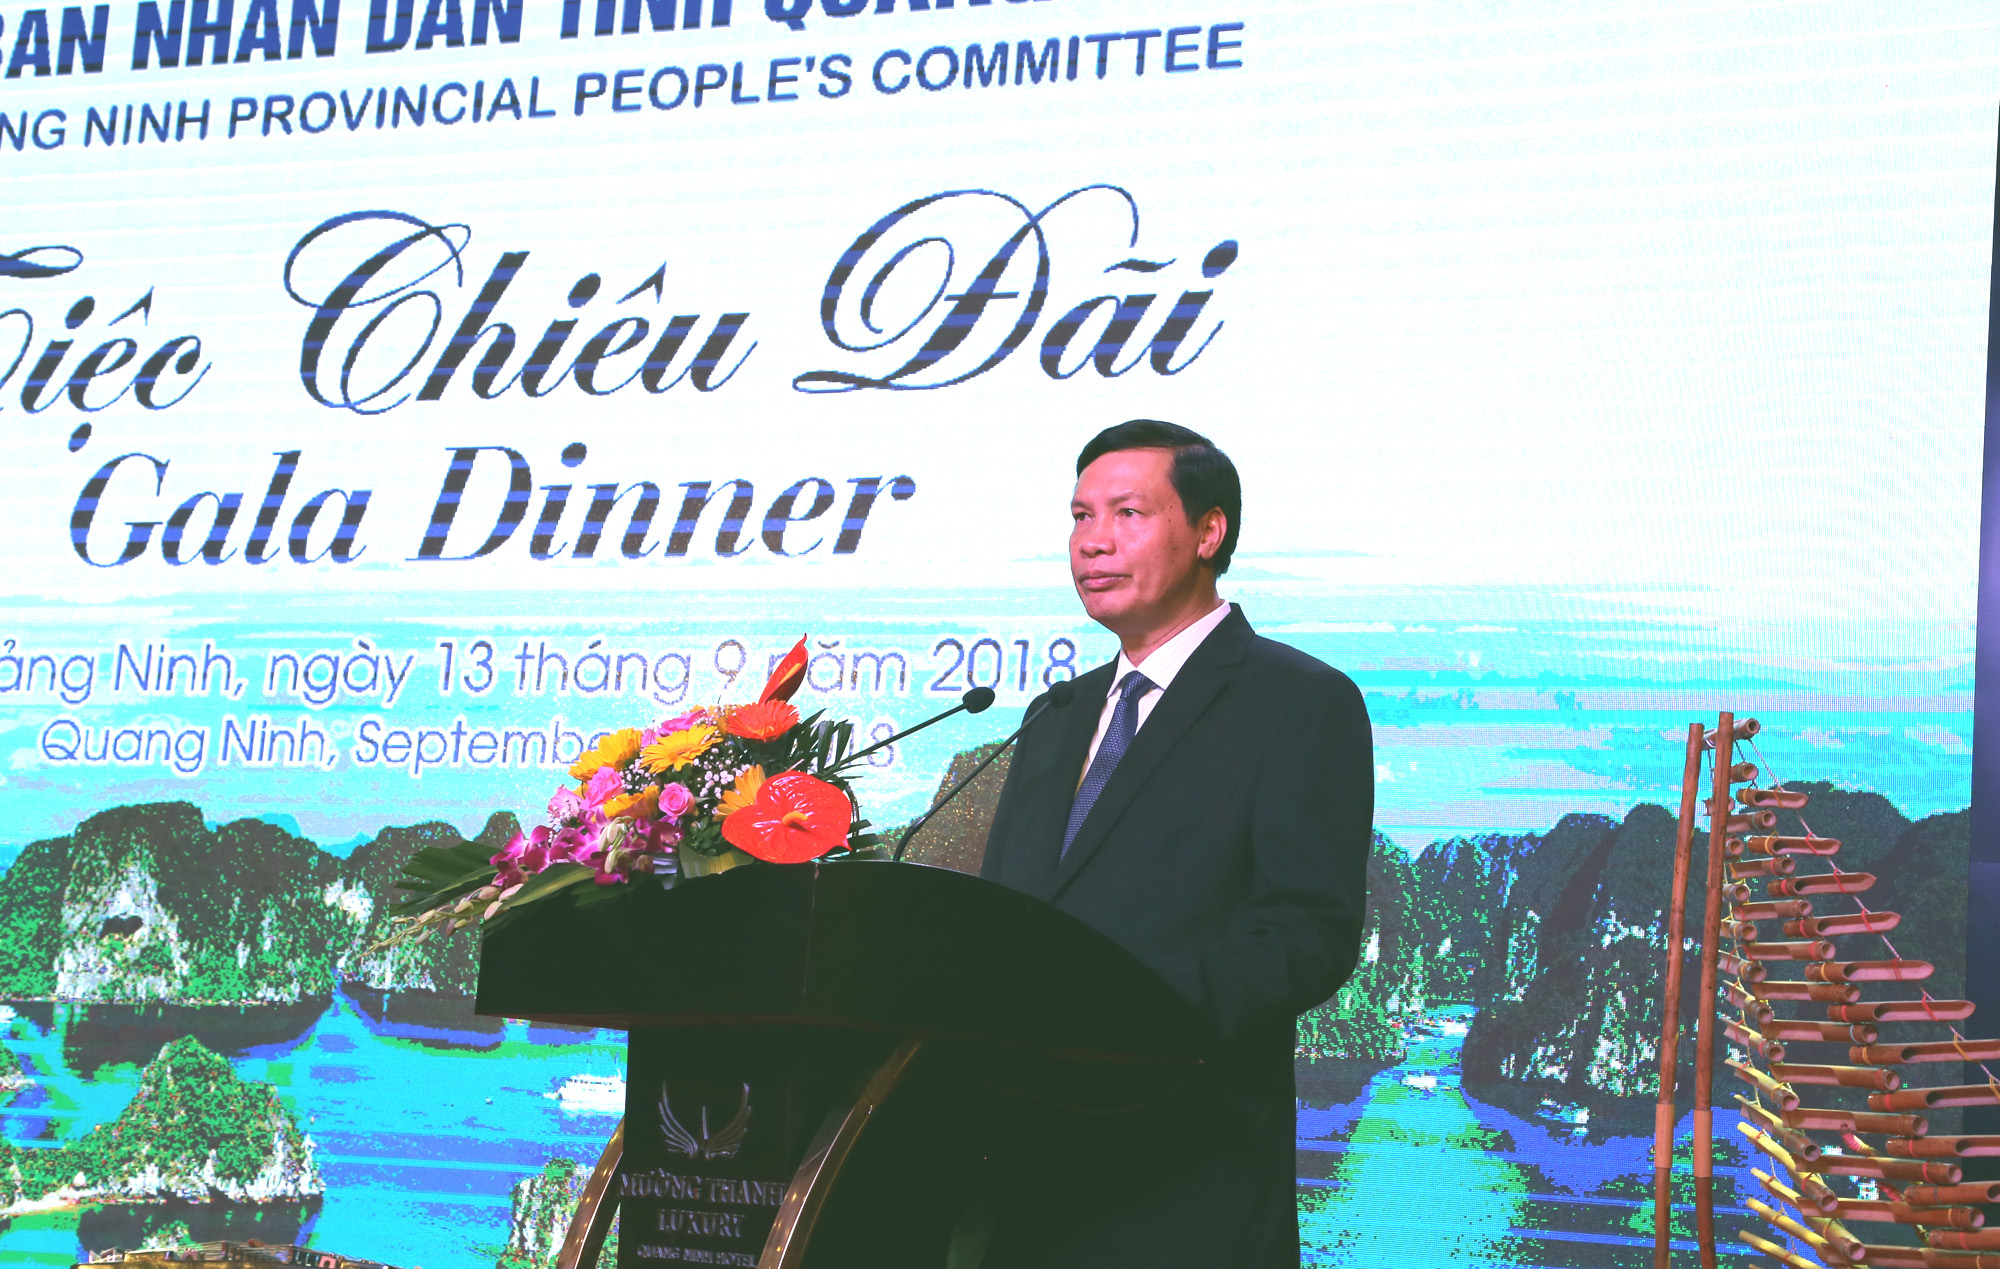 Đồng chí Nguyễn Đức Long, Phó Bí thư Tỉnh ủy, Chủ tịch UBND tỉnh, phát biểu tại chào mừng Đoàn đại biểu đến Quảng Ninh.